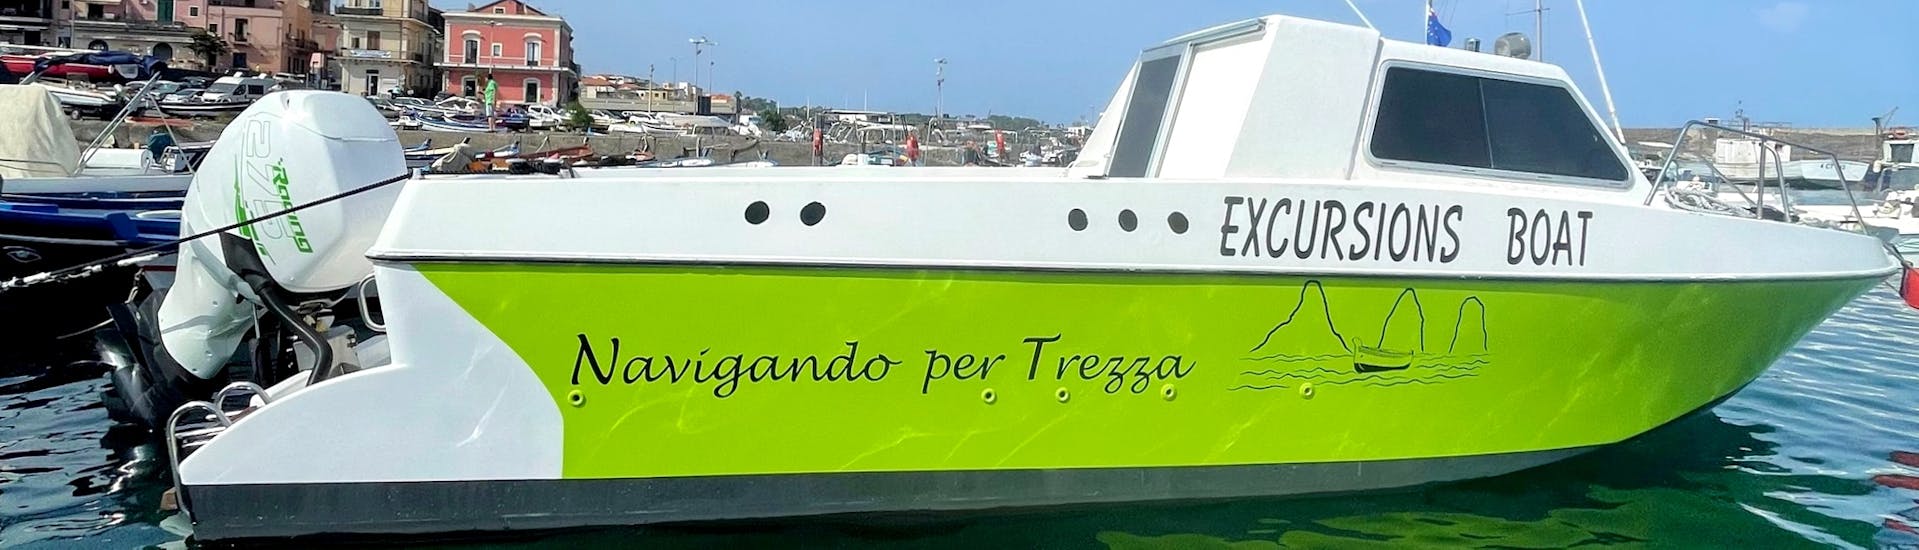 El barco de Navigando per Trezza antes de comenzar el paseo en barco desde Aci Trezza con avistamiento de delfines al atardecer.